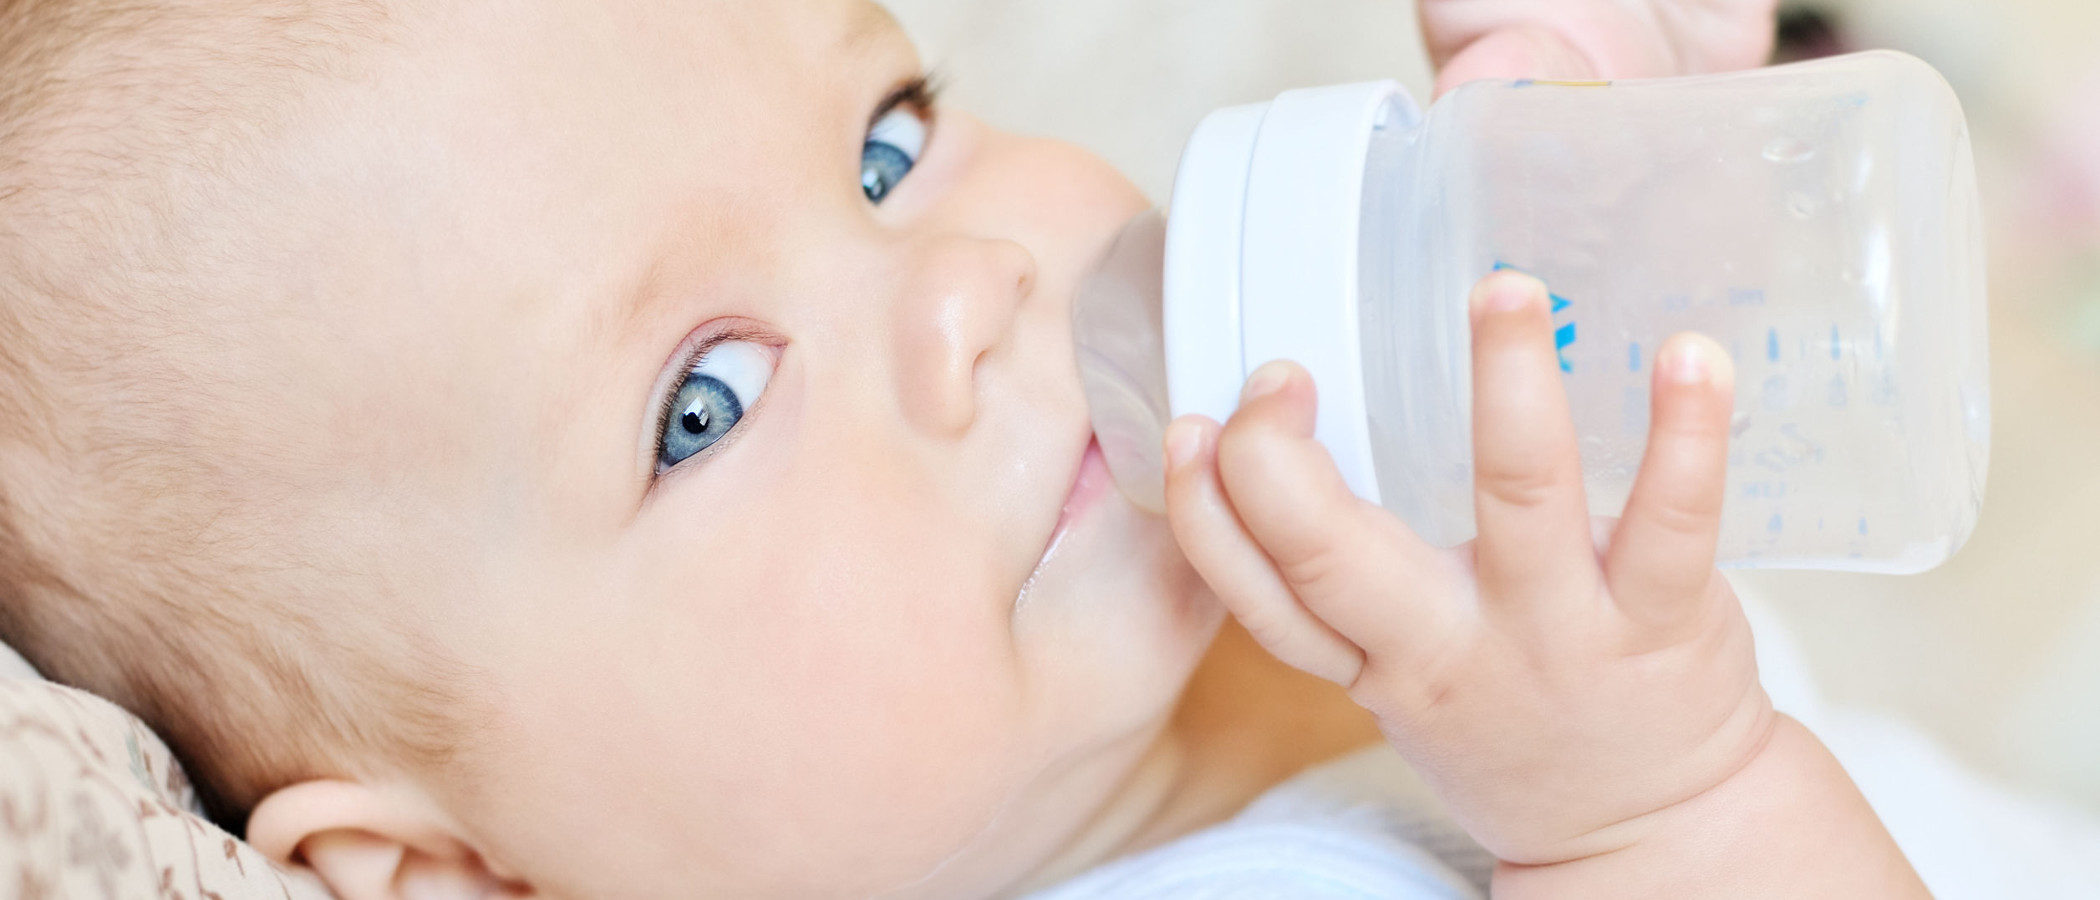 La alimentación del bebé de 6 meses: sus primeras comidas después de la leche